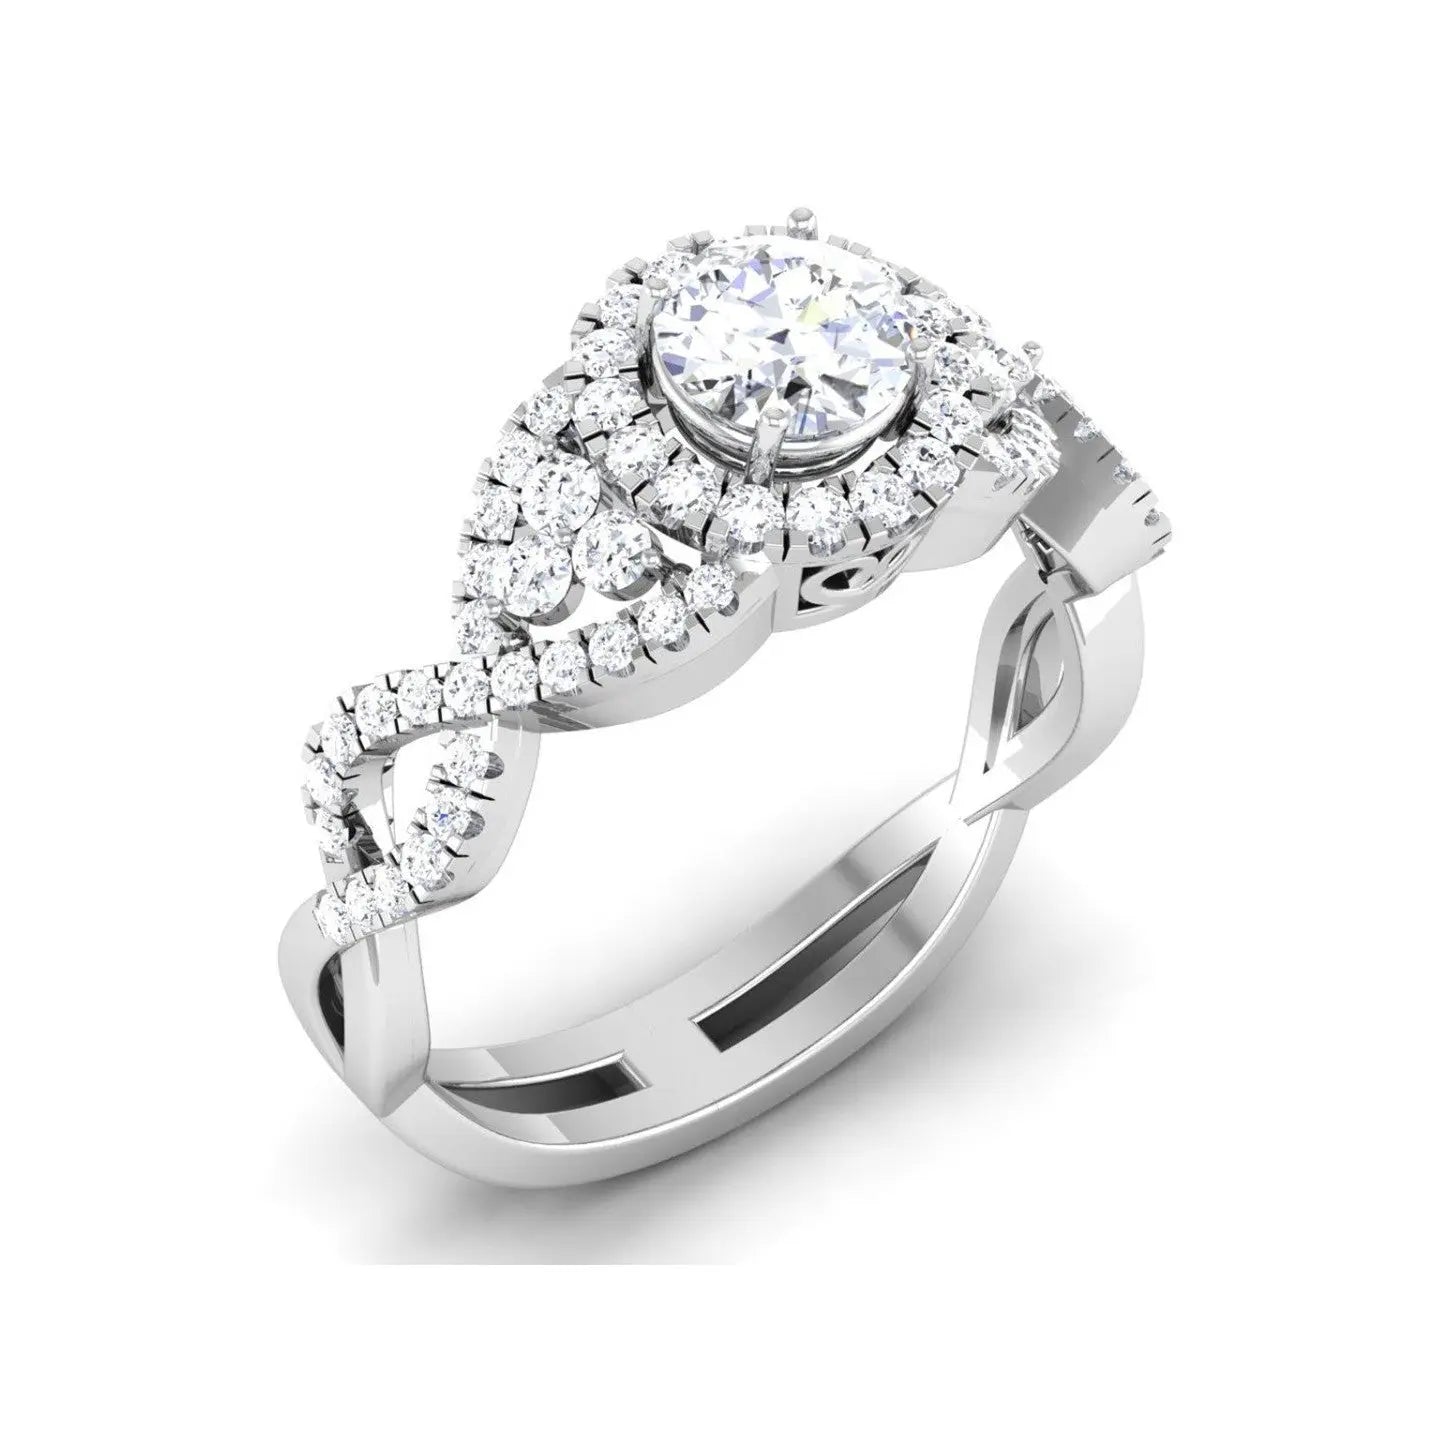 Designer 60 Pointer Solitaire Engagement Ring in Platinum JL PT 441   Jewelove